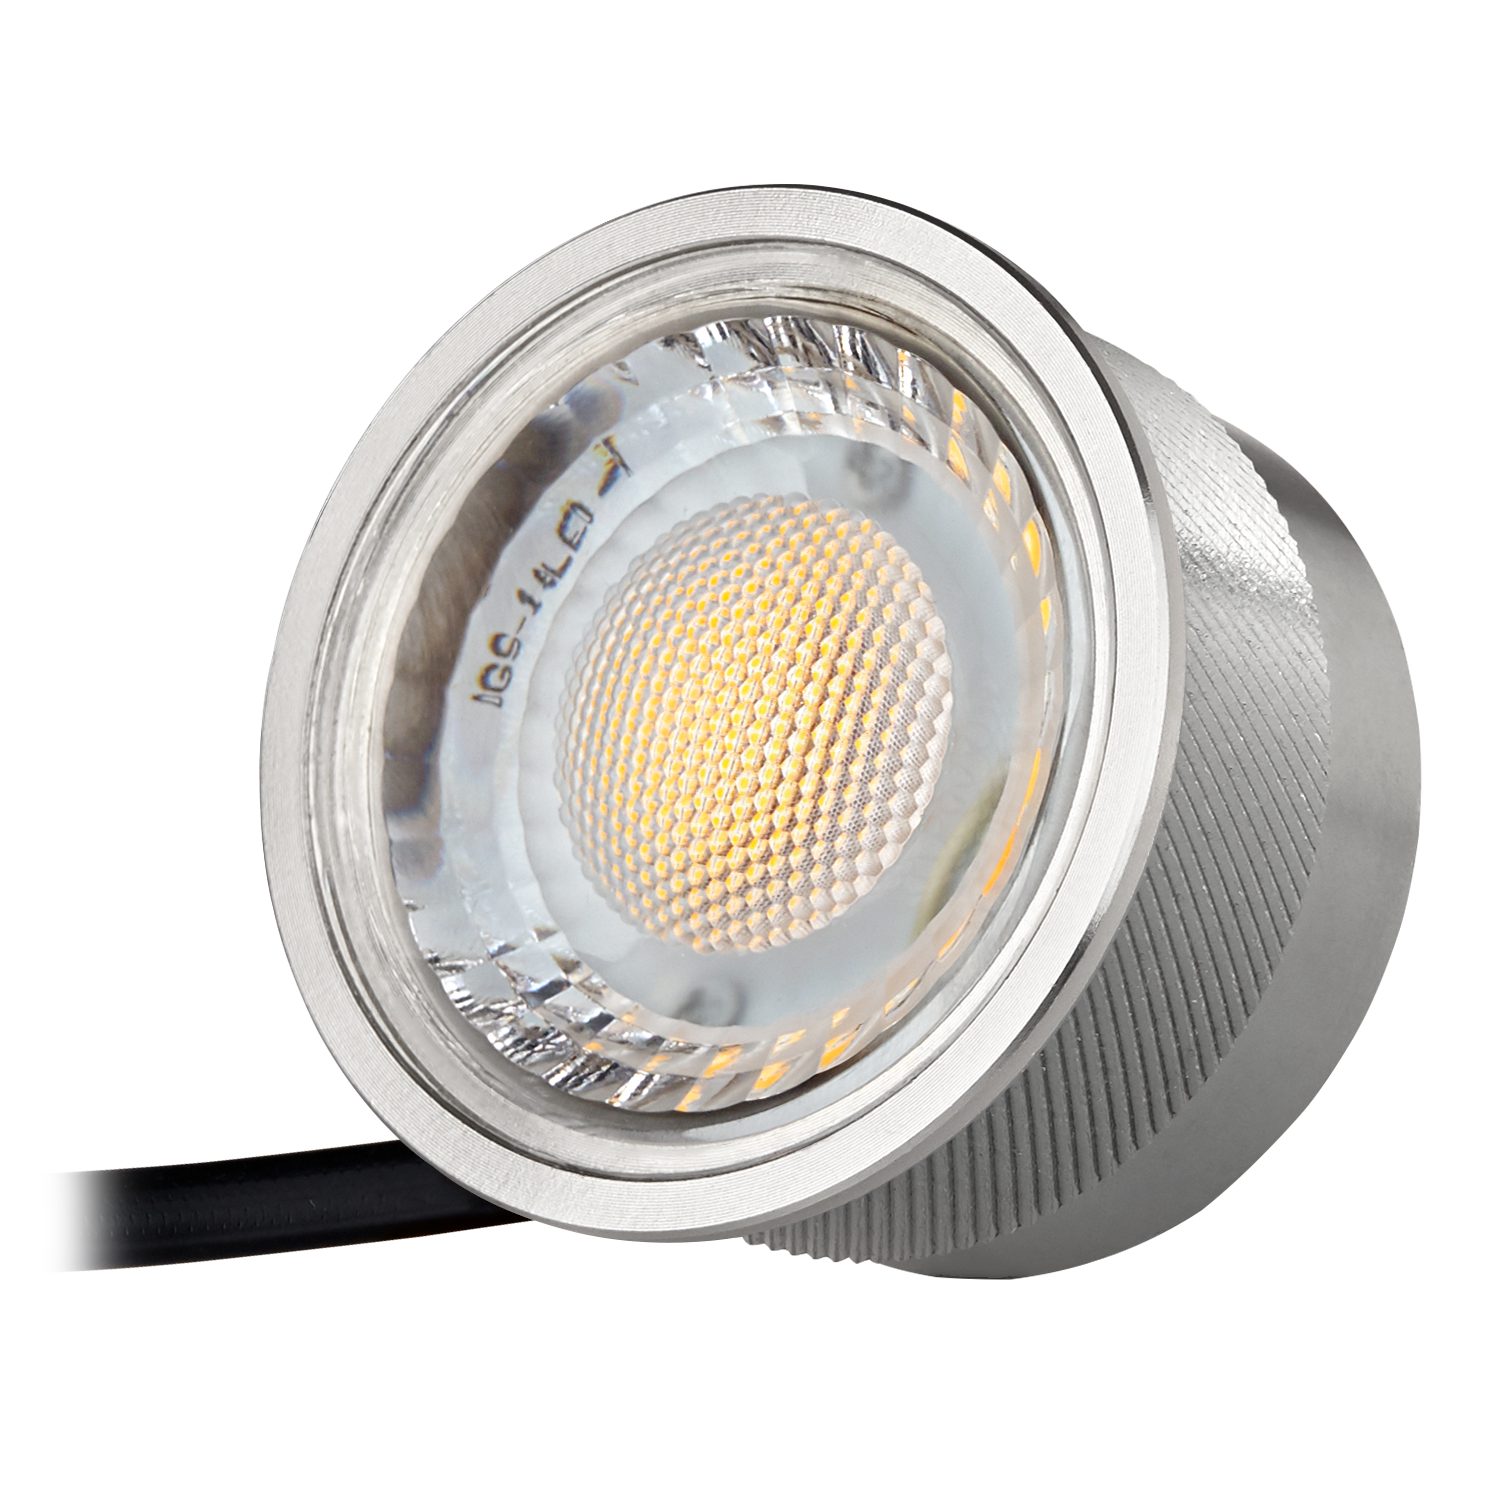 LEDANDO LED Einbaustrahler 10er von flach mit LEDANDO Einbaustrahler extra LED weiß Set 5W LED in